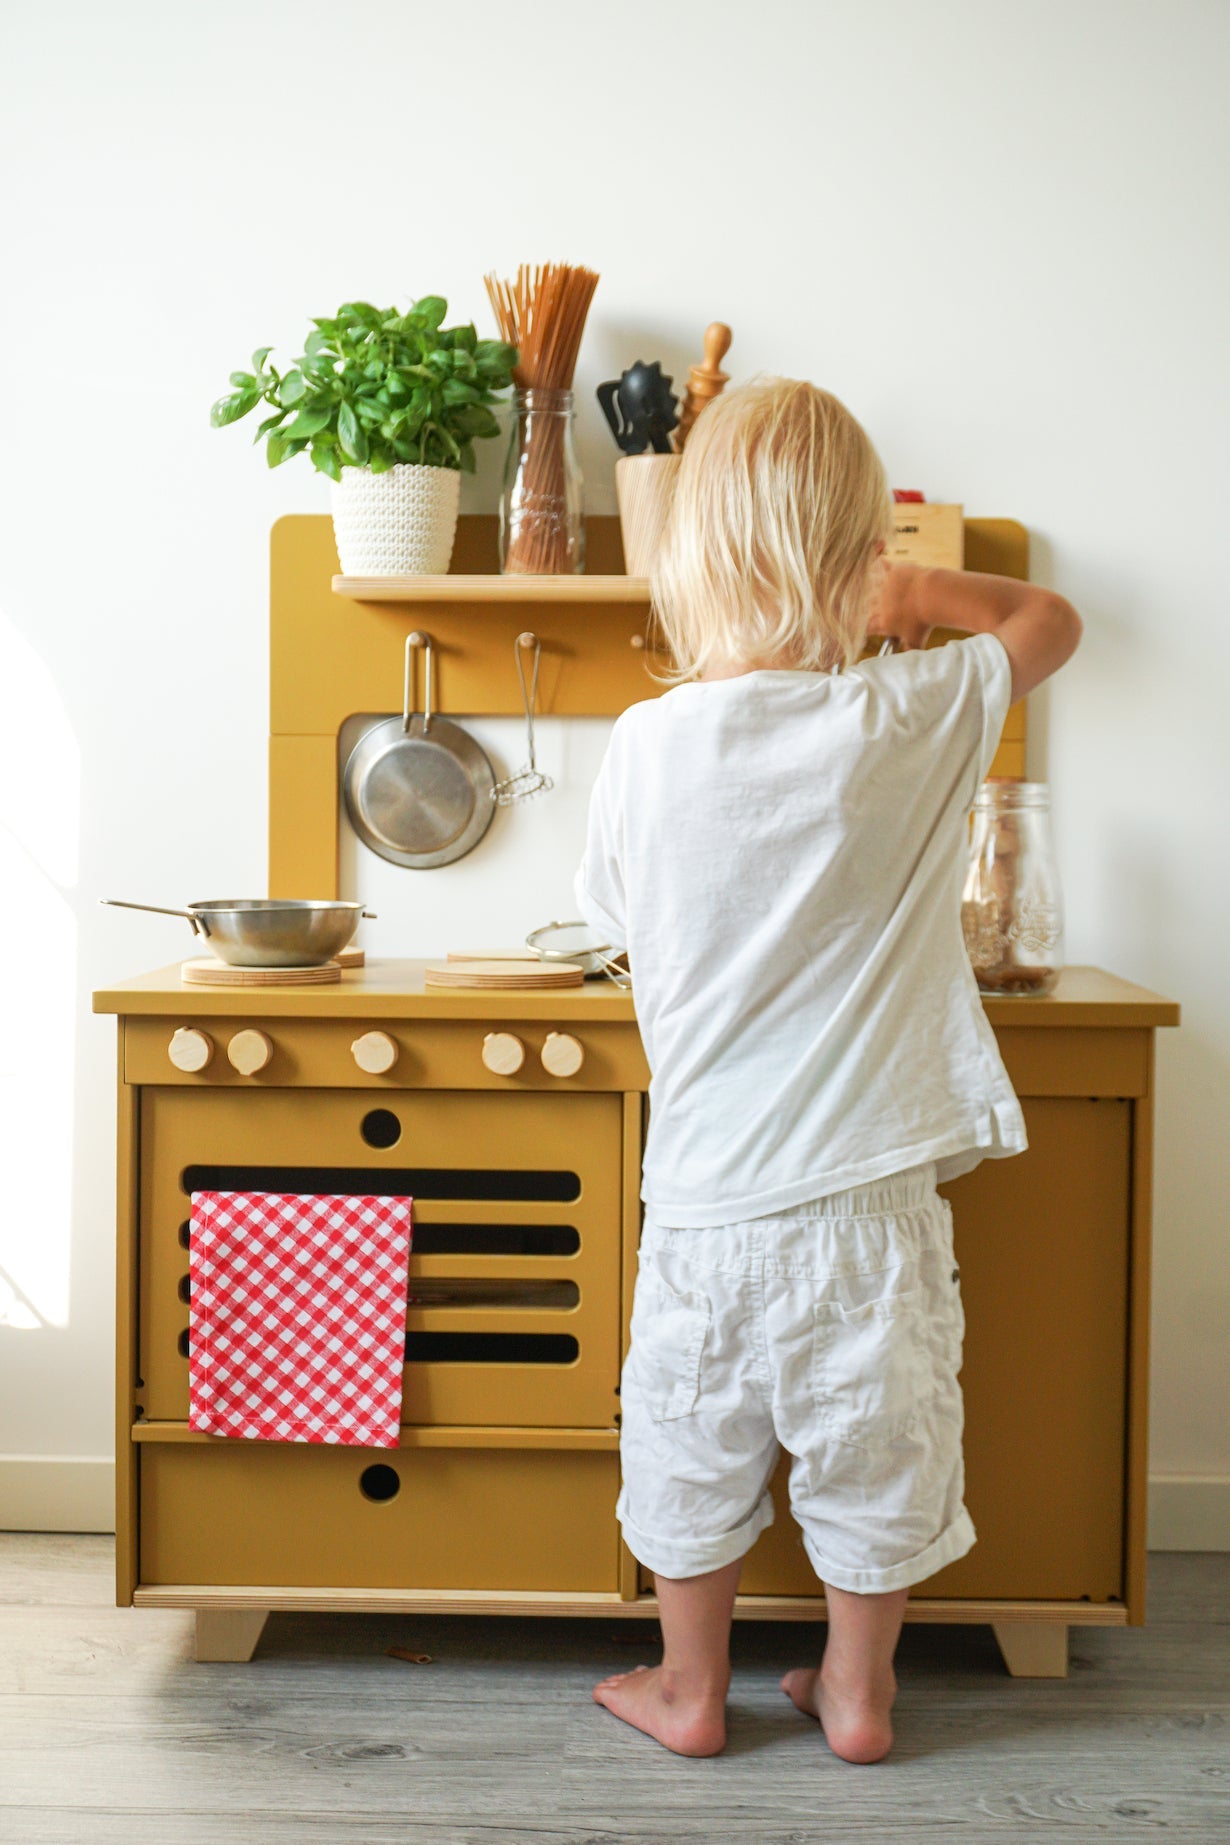 Midmini Mustard holz spiel Kitchen - Kinderzimmermöbel & Baby Spielzeugaktivitäten für den ultimativen Spielspaß